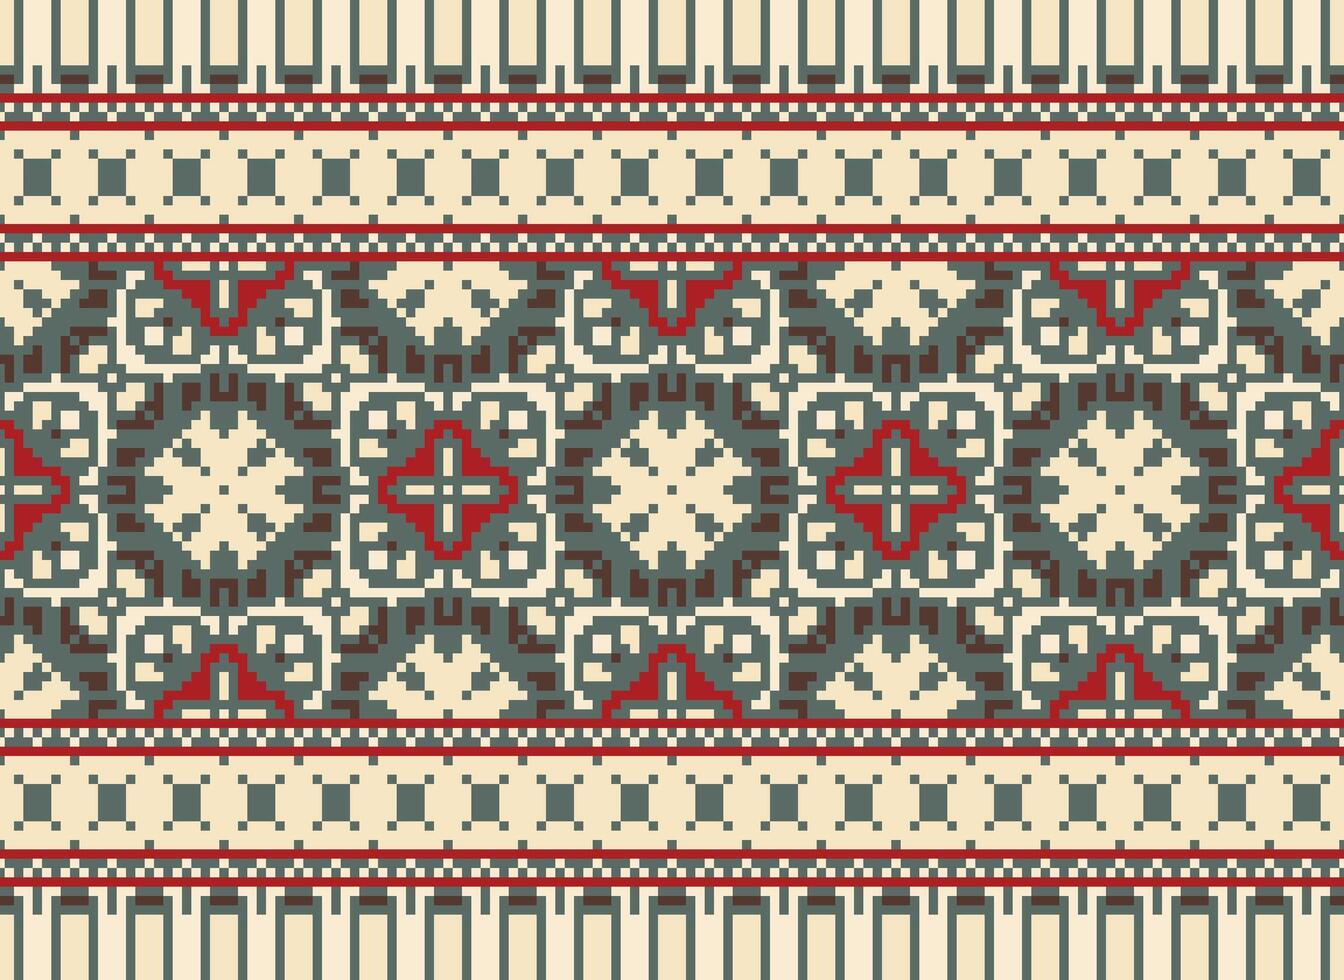 millésimes traverser point traditionnel ethnique modèle paisley fleur ikat Contexte abstrait aztèque africain indonésien Indien sans couture modèle pour en tissu impression tissu robe tapis rideaux et sarong vecteur